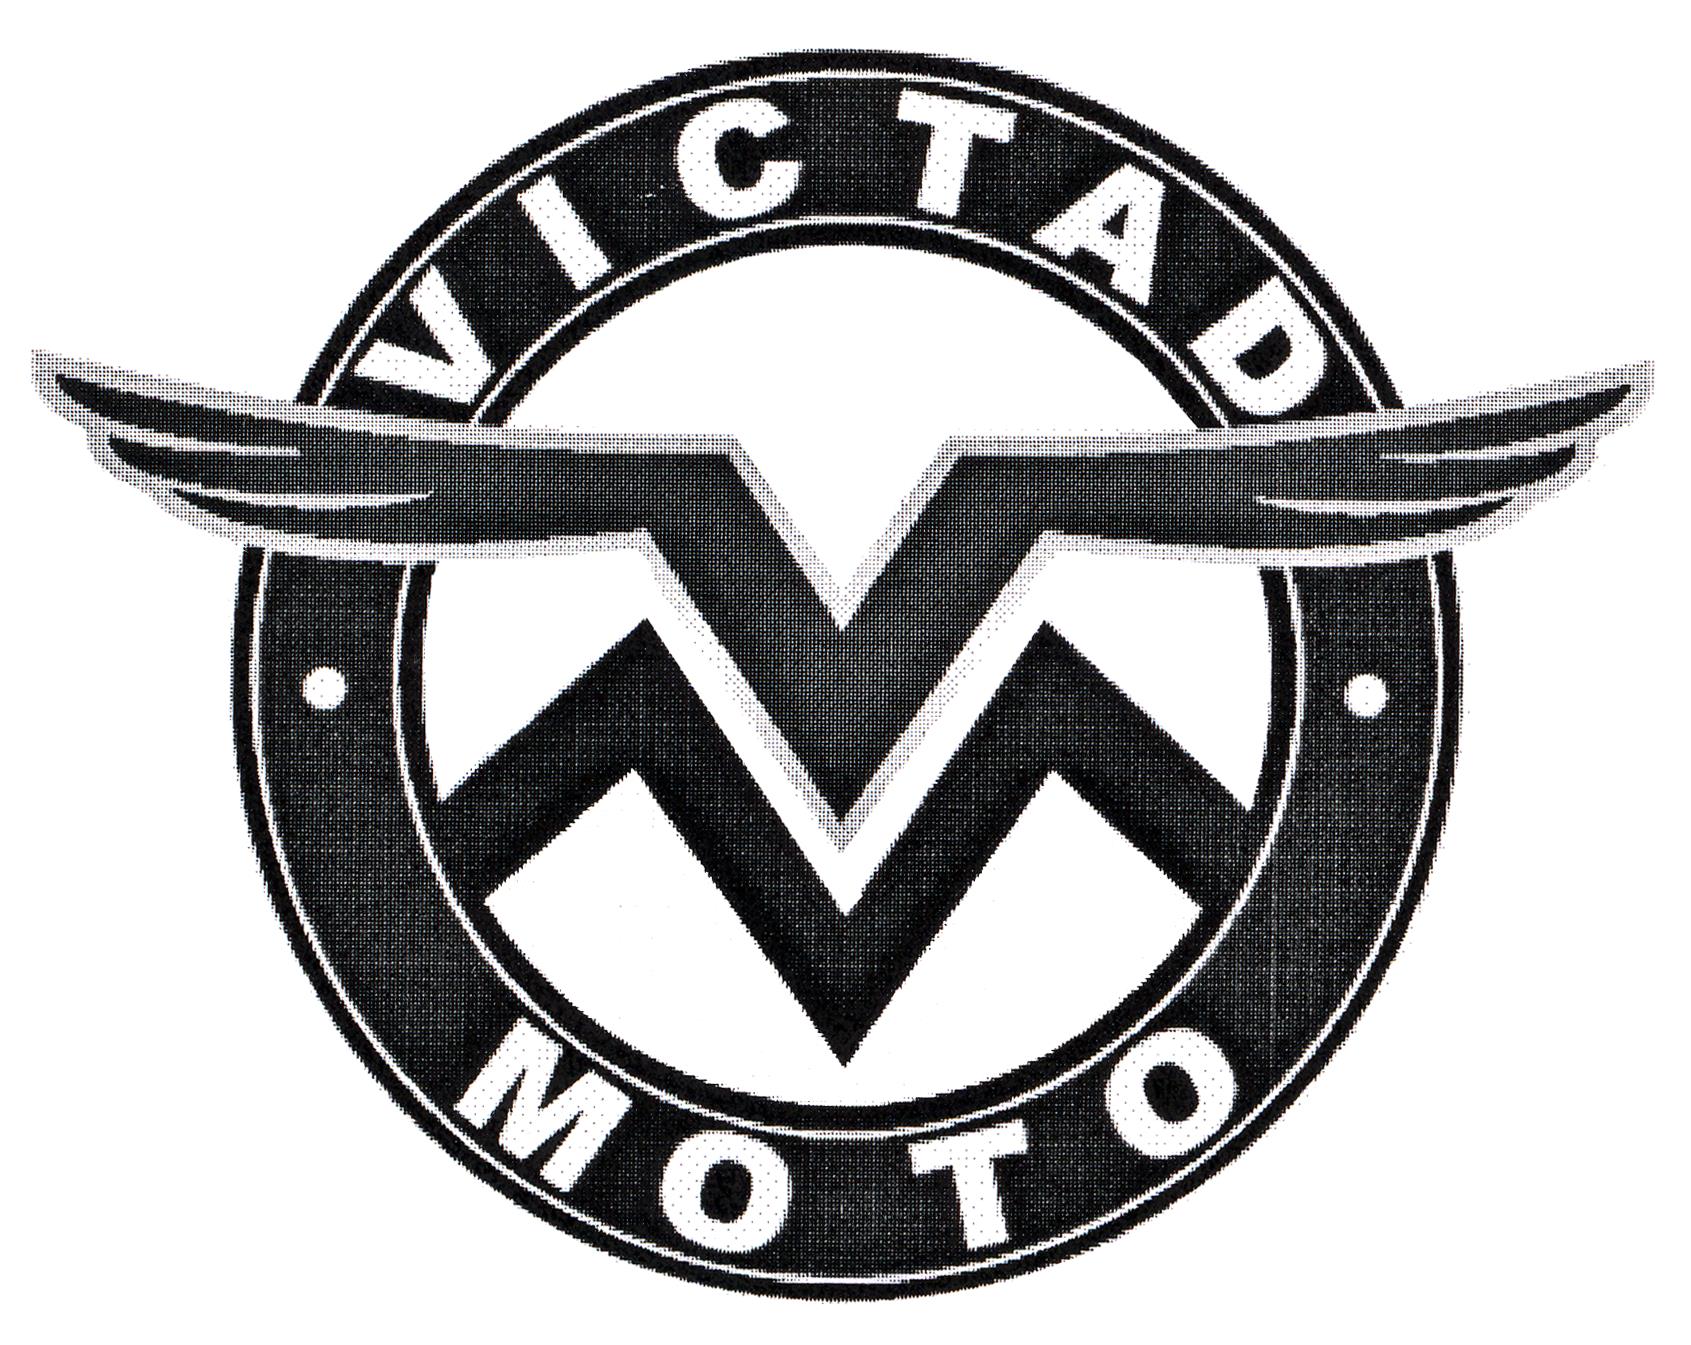 VM VICTAD MOTO